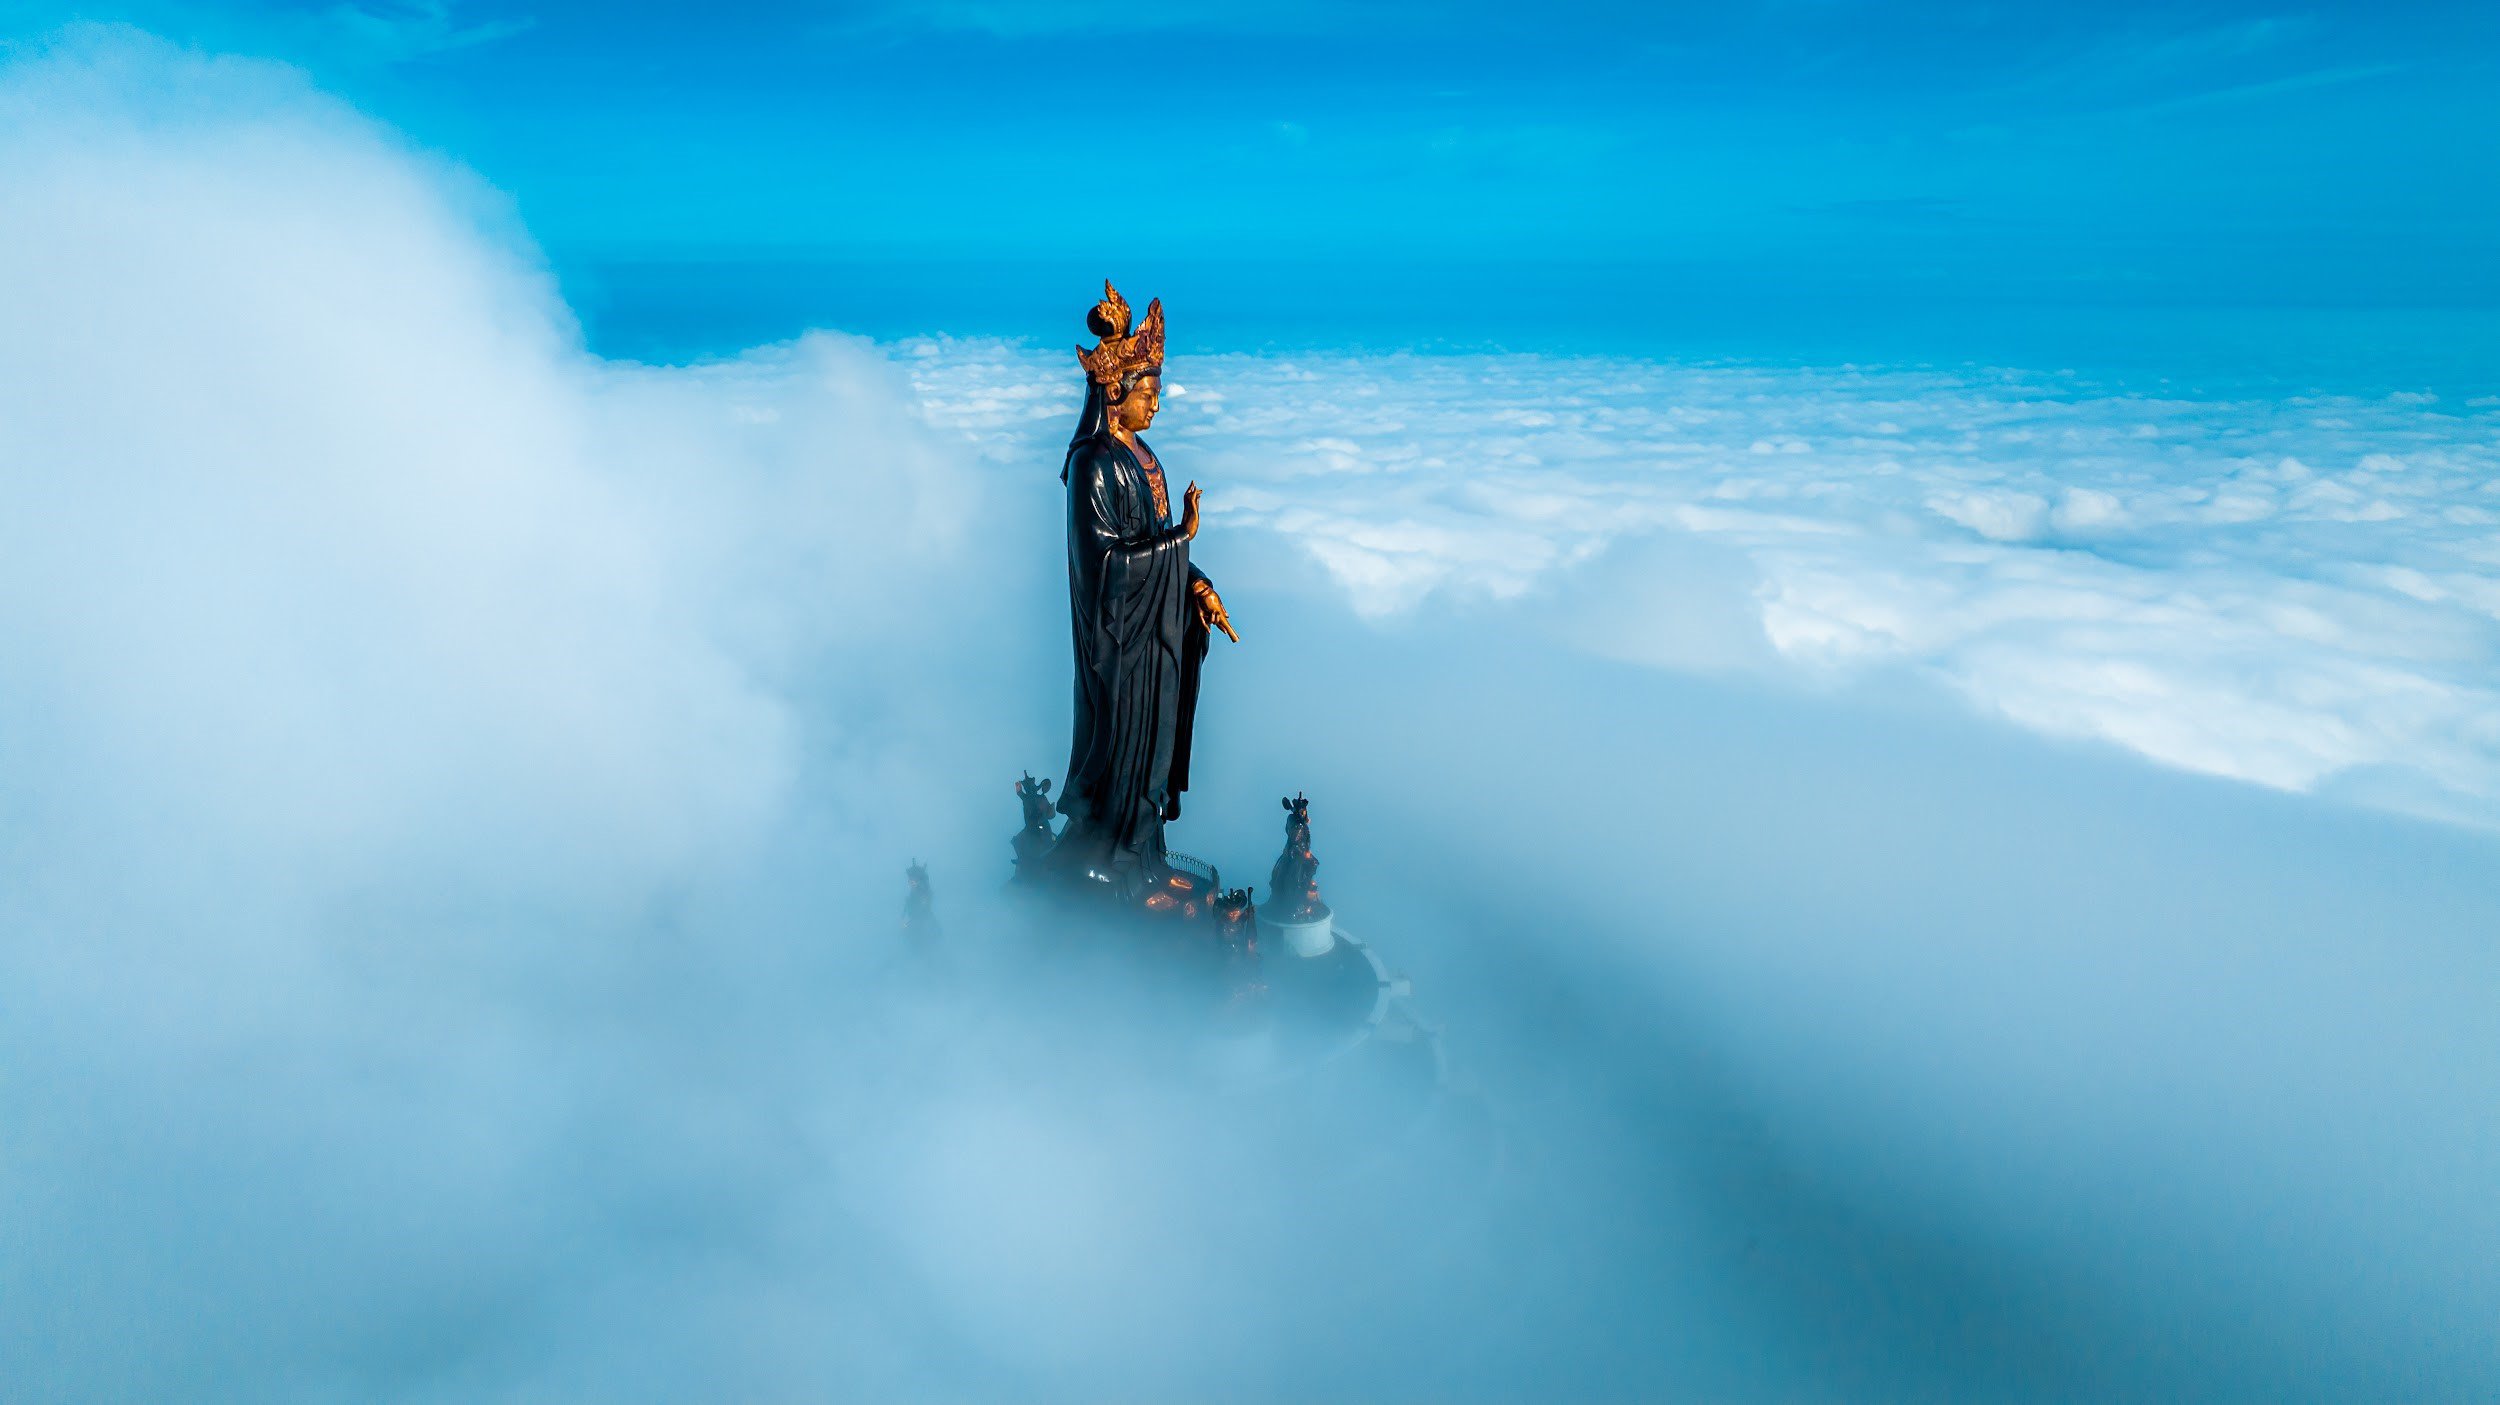 Săn mây đĩa bay tại núi Bà Đen, Tây Ninh đang hot, và đây là bí kíp - 3